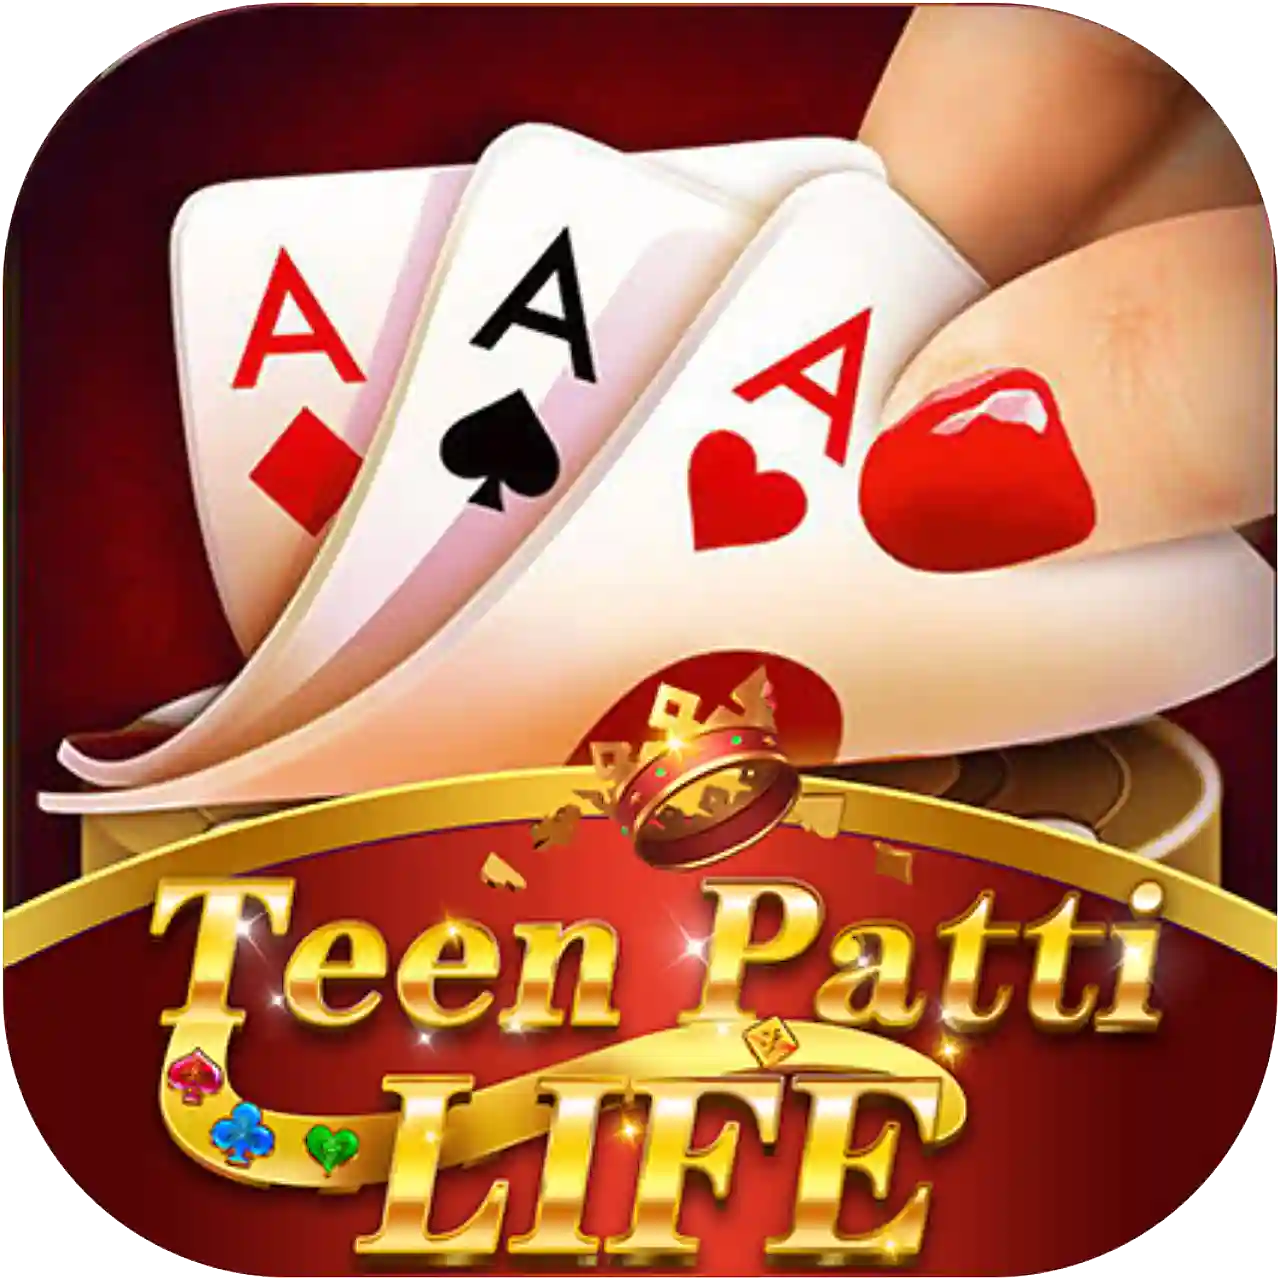 Teen Patti Life - Teen Pattti Wealth